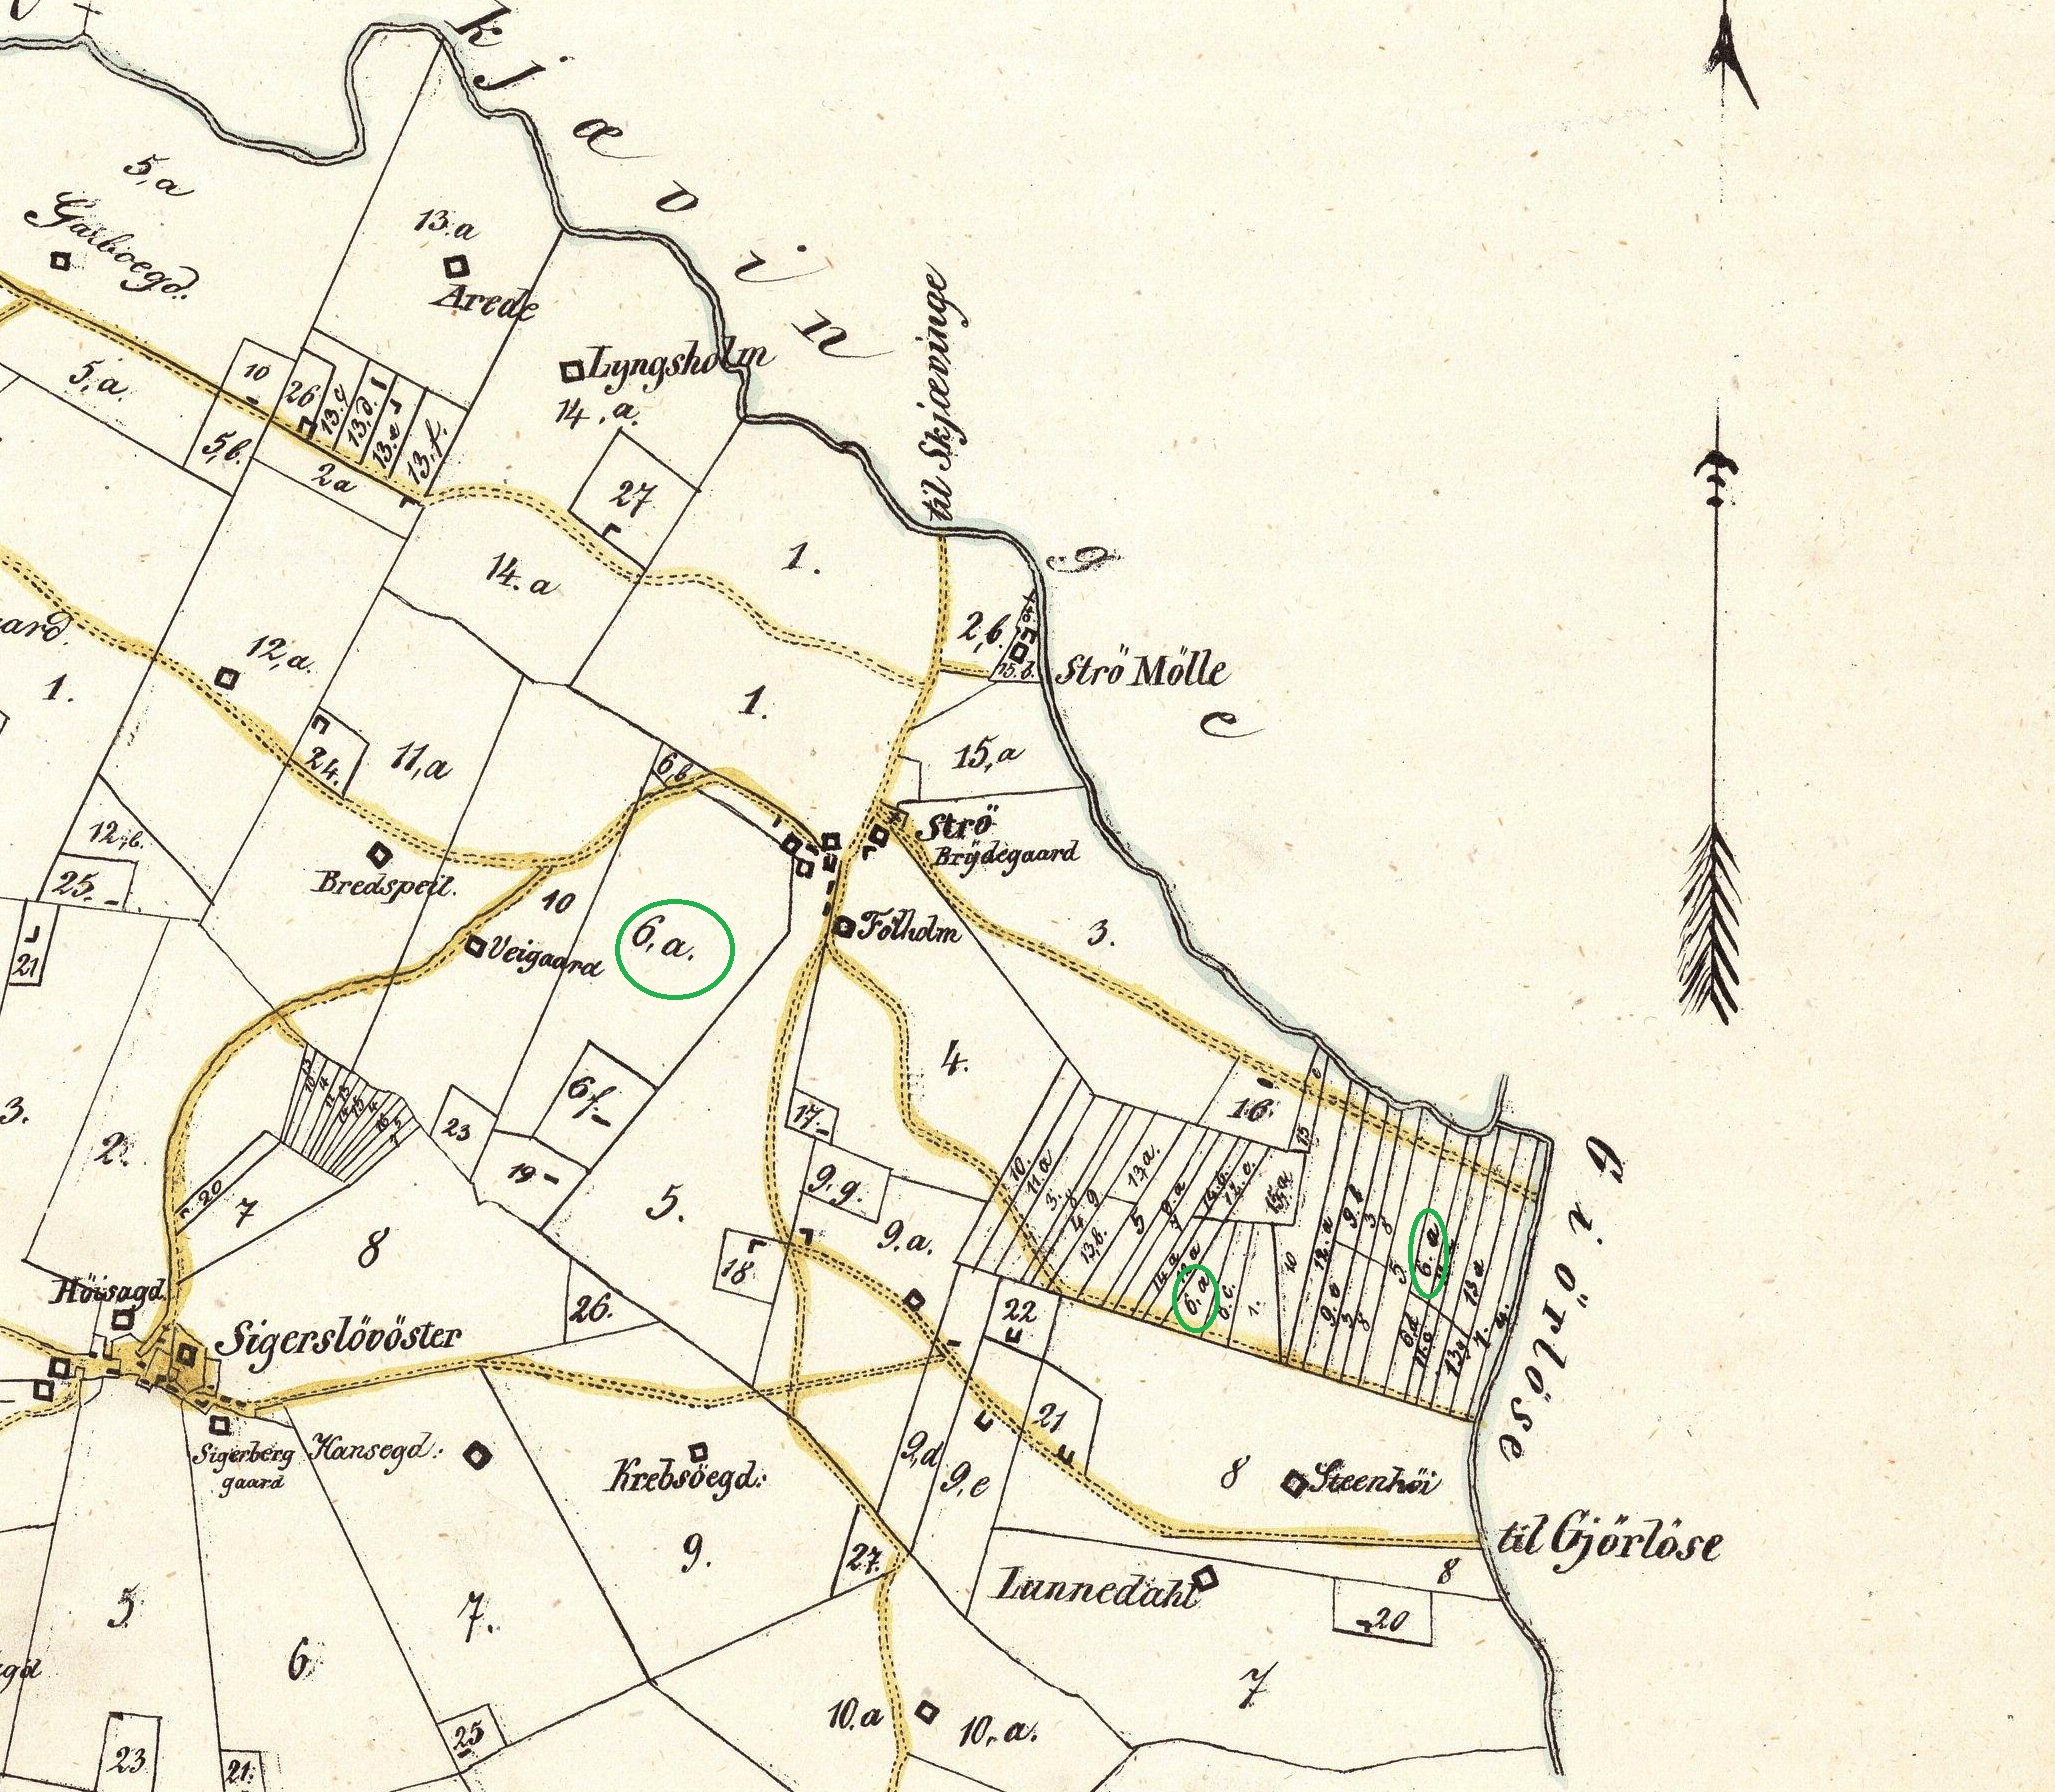 Strøgaards arealer 1850